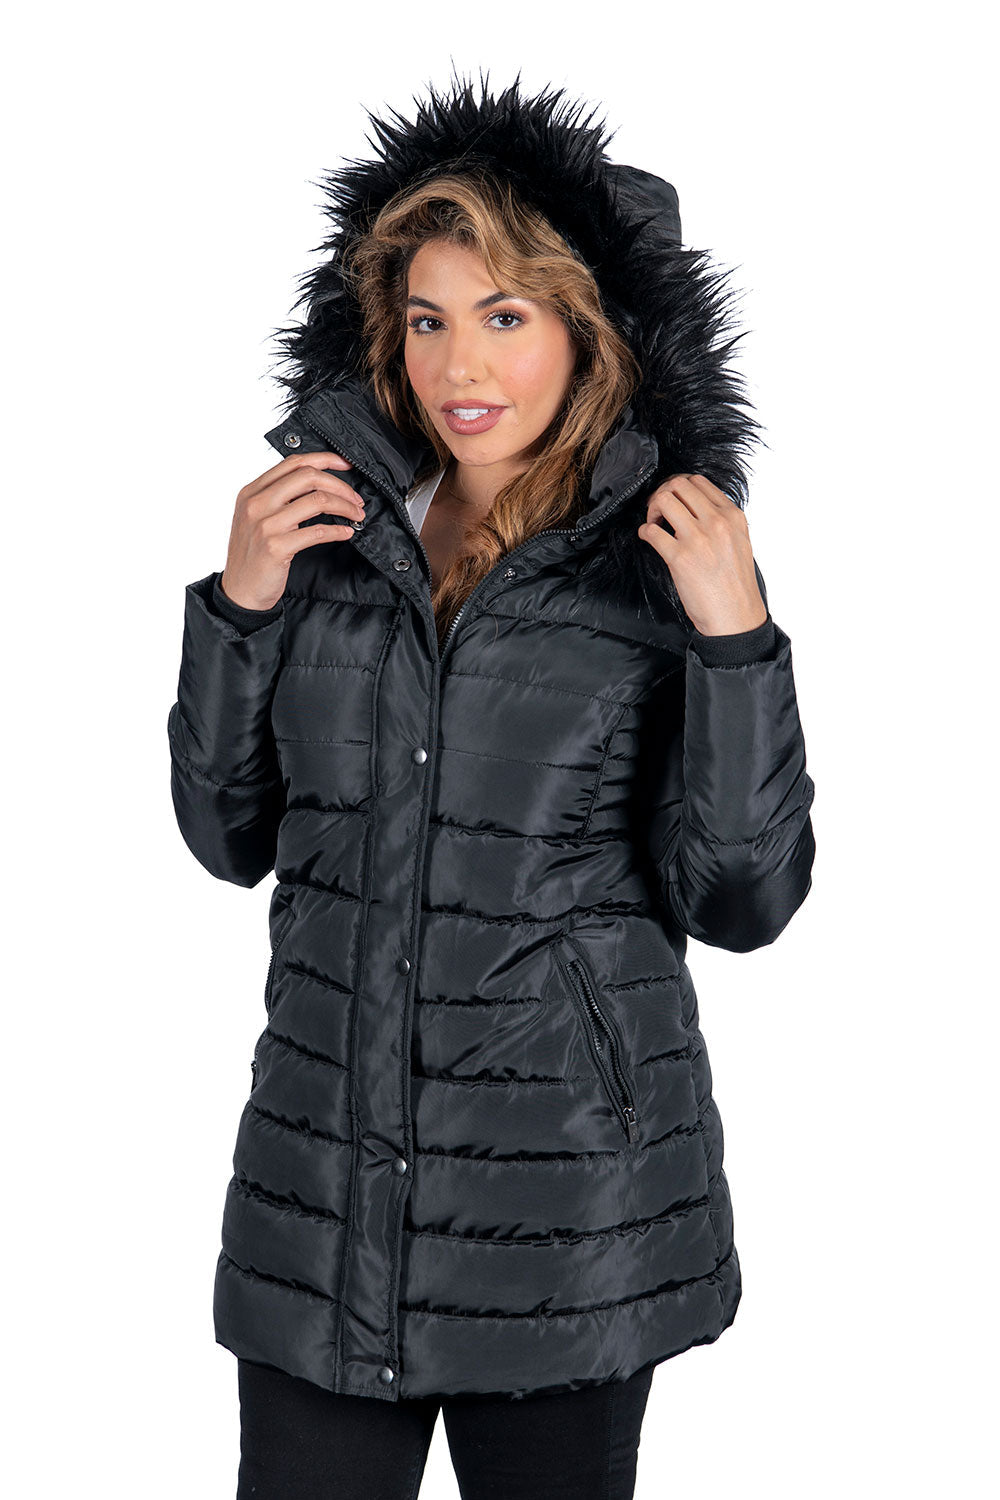 Women's Padded Fur Hoodie Jackets (S-M-L-XL-2XL / 4-7-7-3-3) 24 pcs